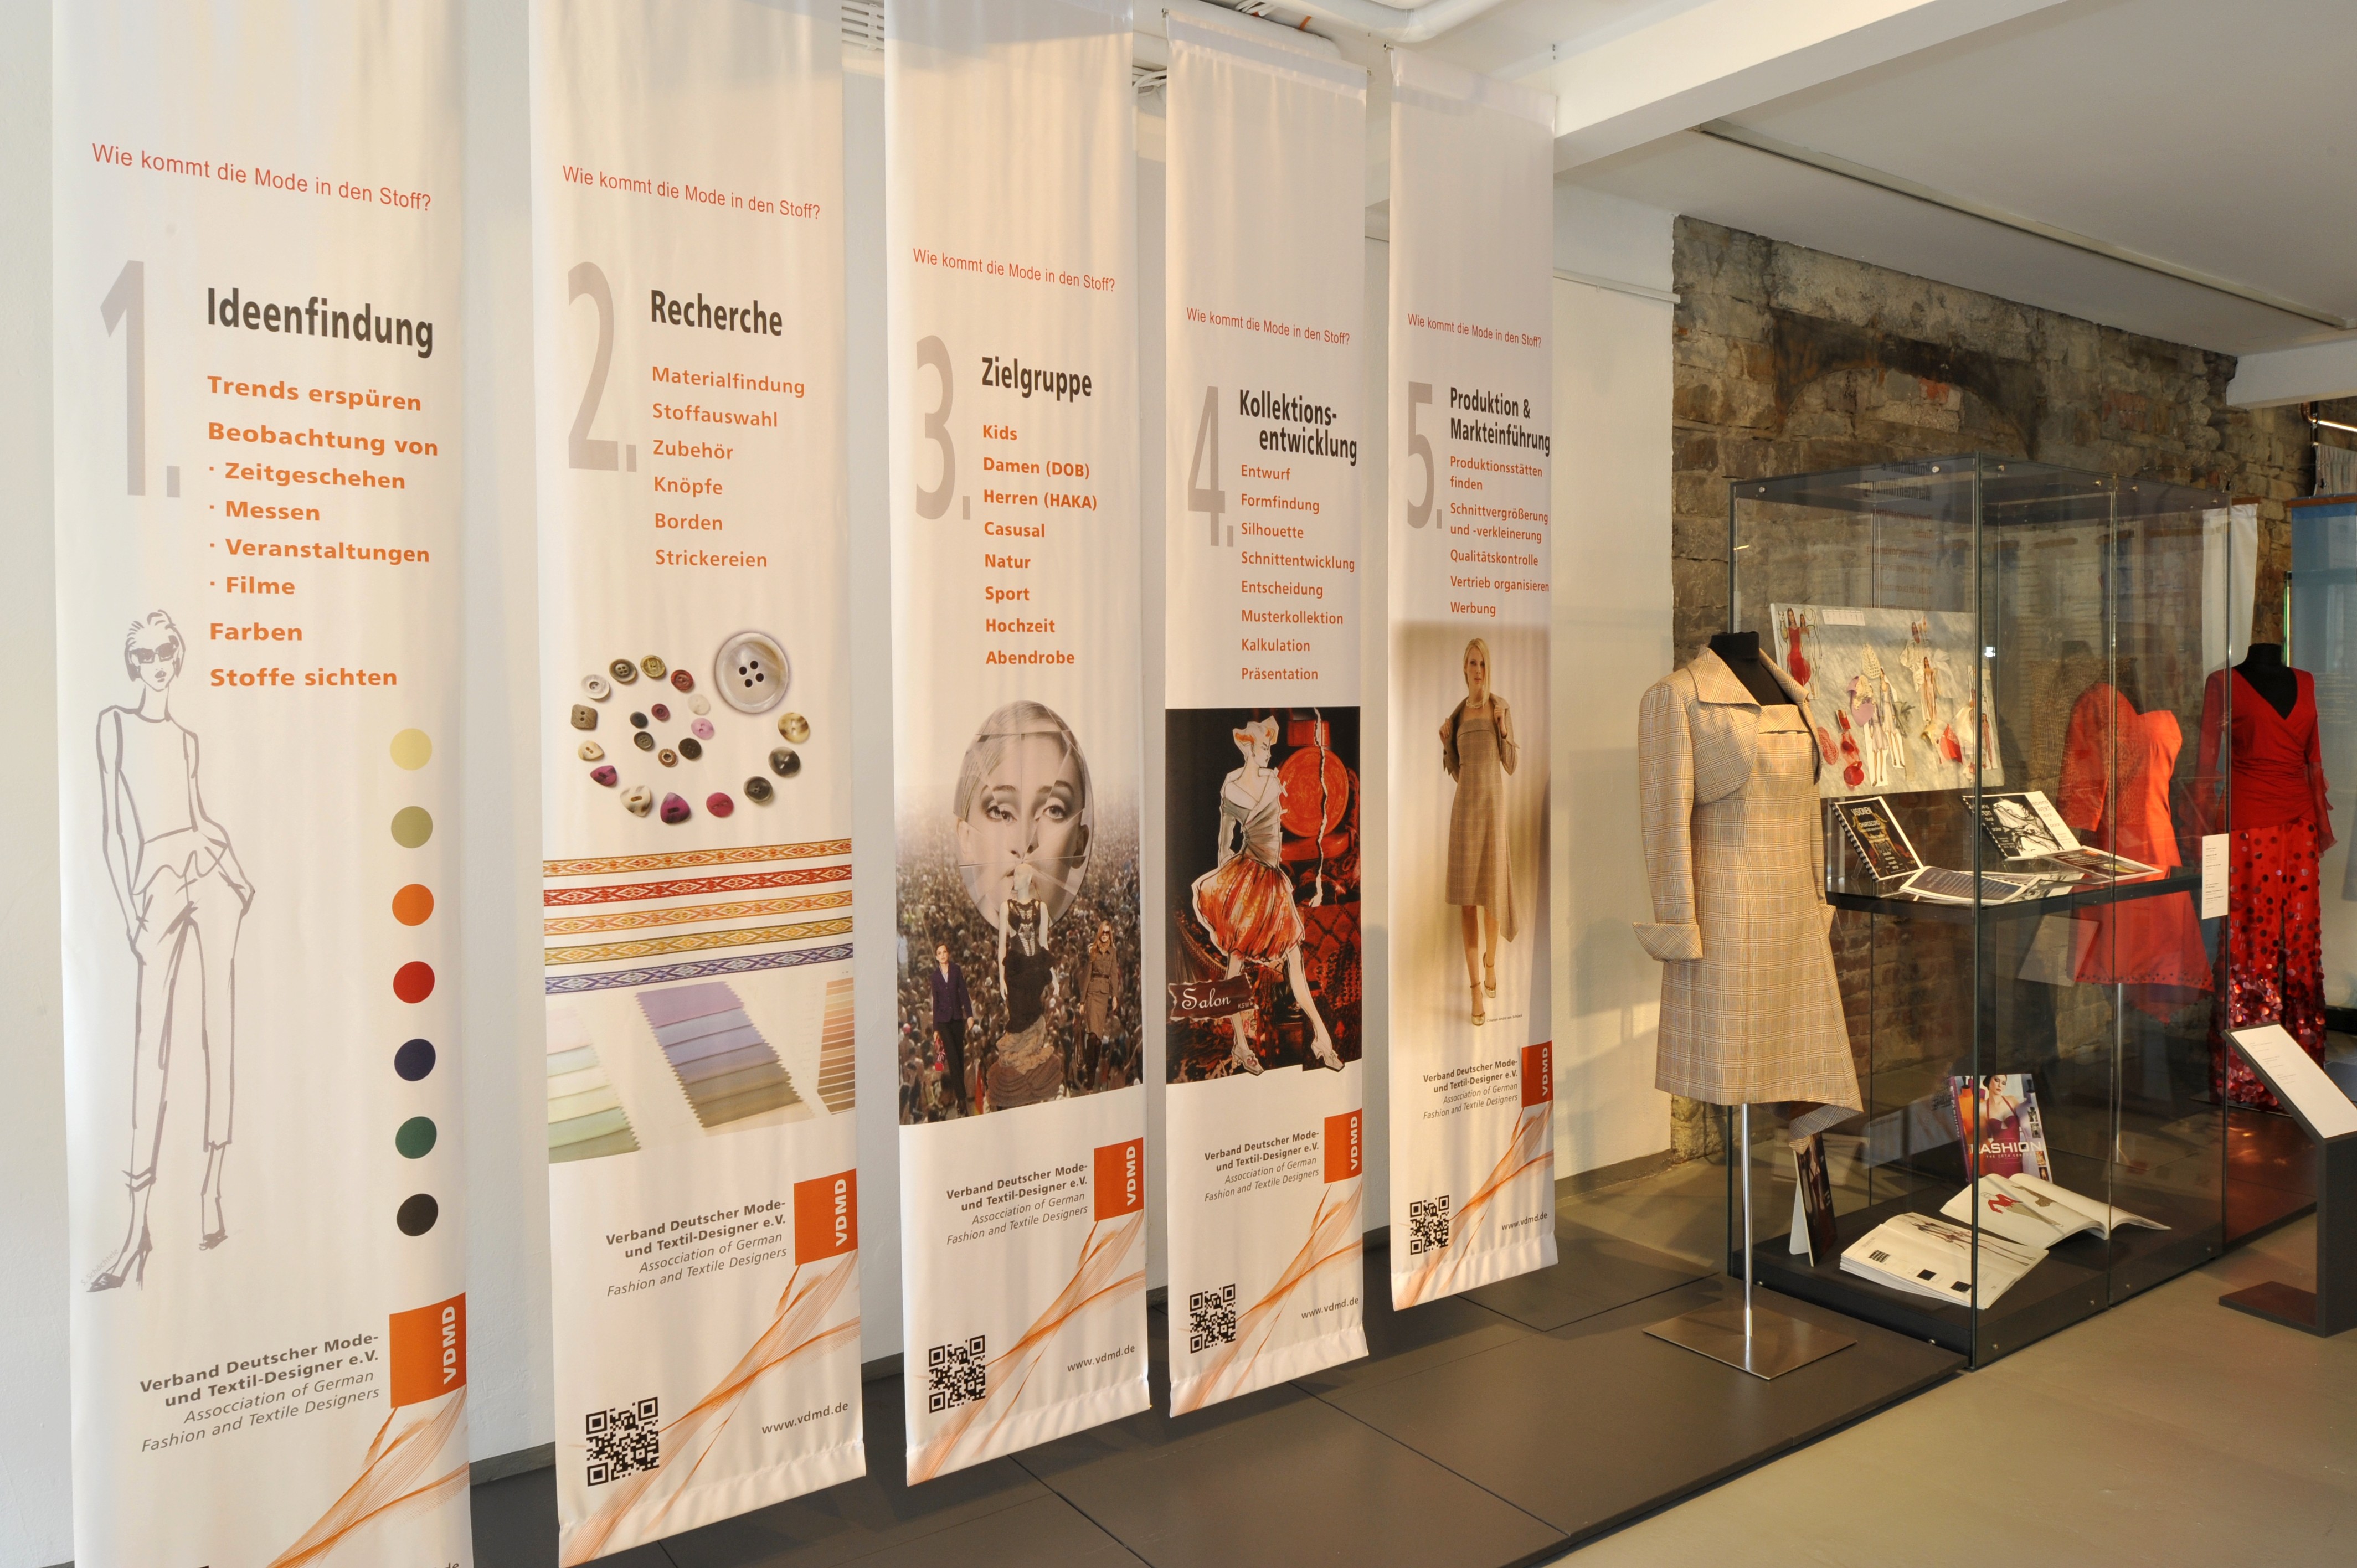 Welche Arbeitsschritte von der ersten Idee bis zum fertigen Designerkleid durchlaufen werden, erfahren die Besucherinnen und Besucher der Ausstellung in diesem Bereich, der vom Verband Deutscher Modedesigner mitgestaltet wurde.